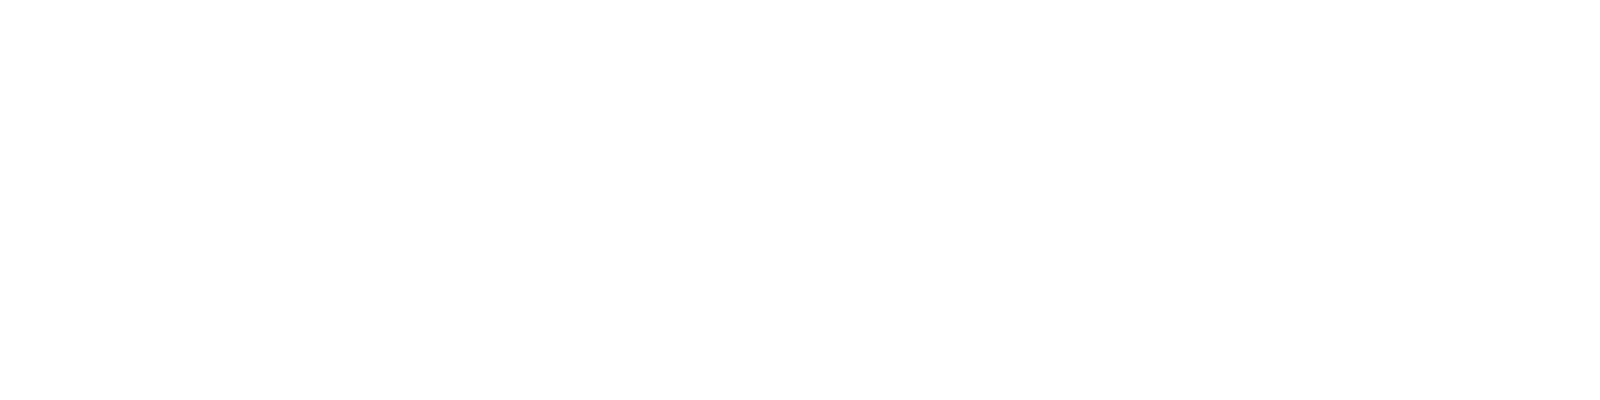 Welltower
 Logo groß für dunkle Hintergründe (transparentes PNG)